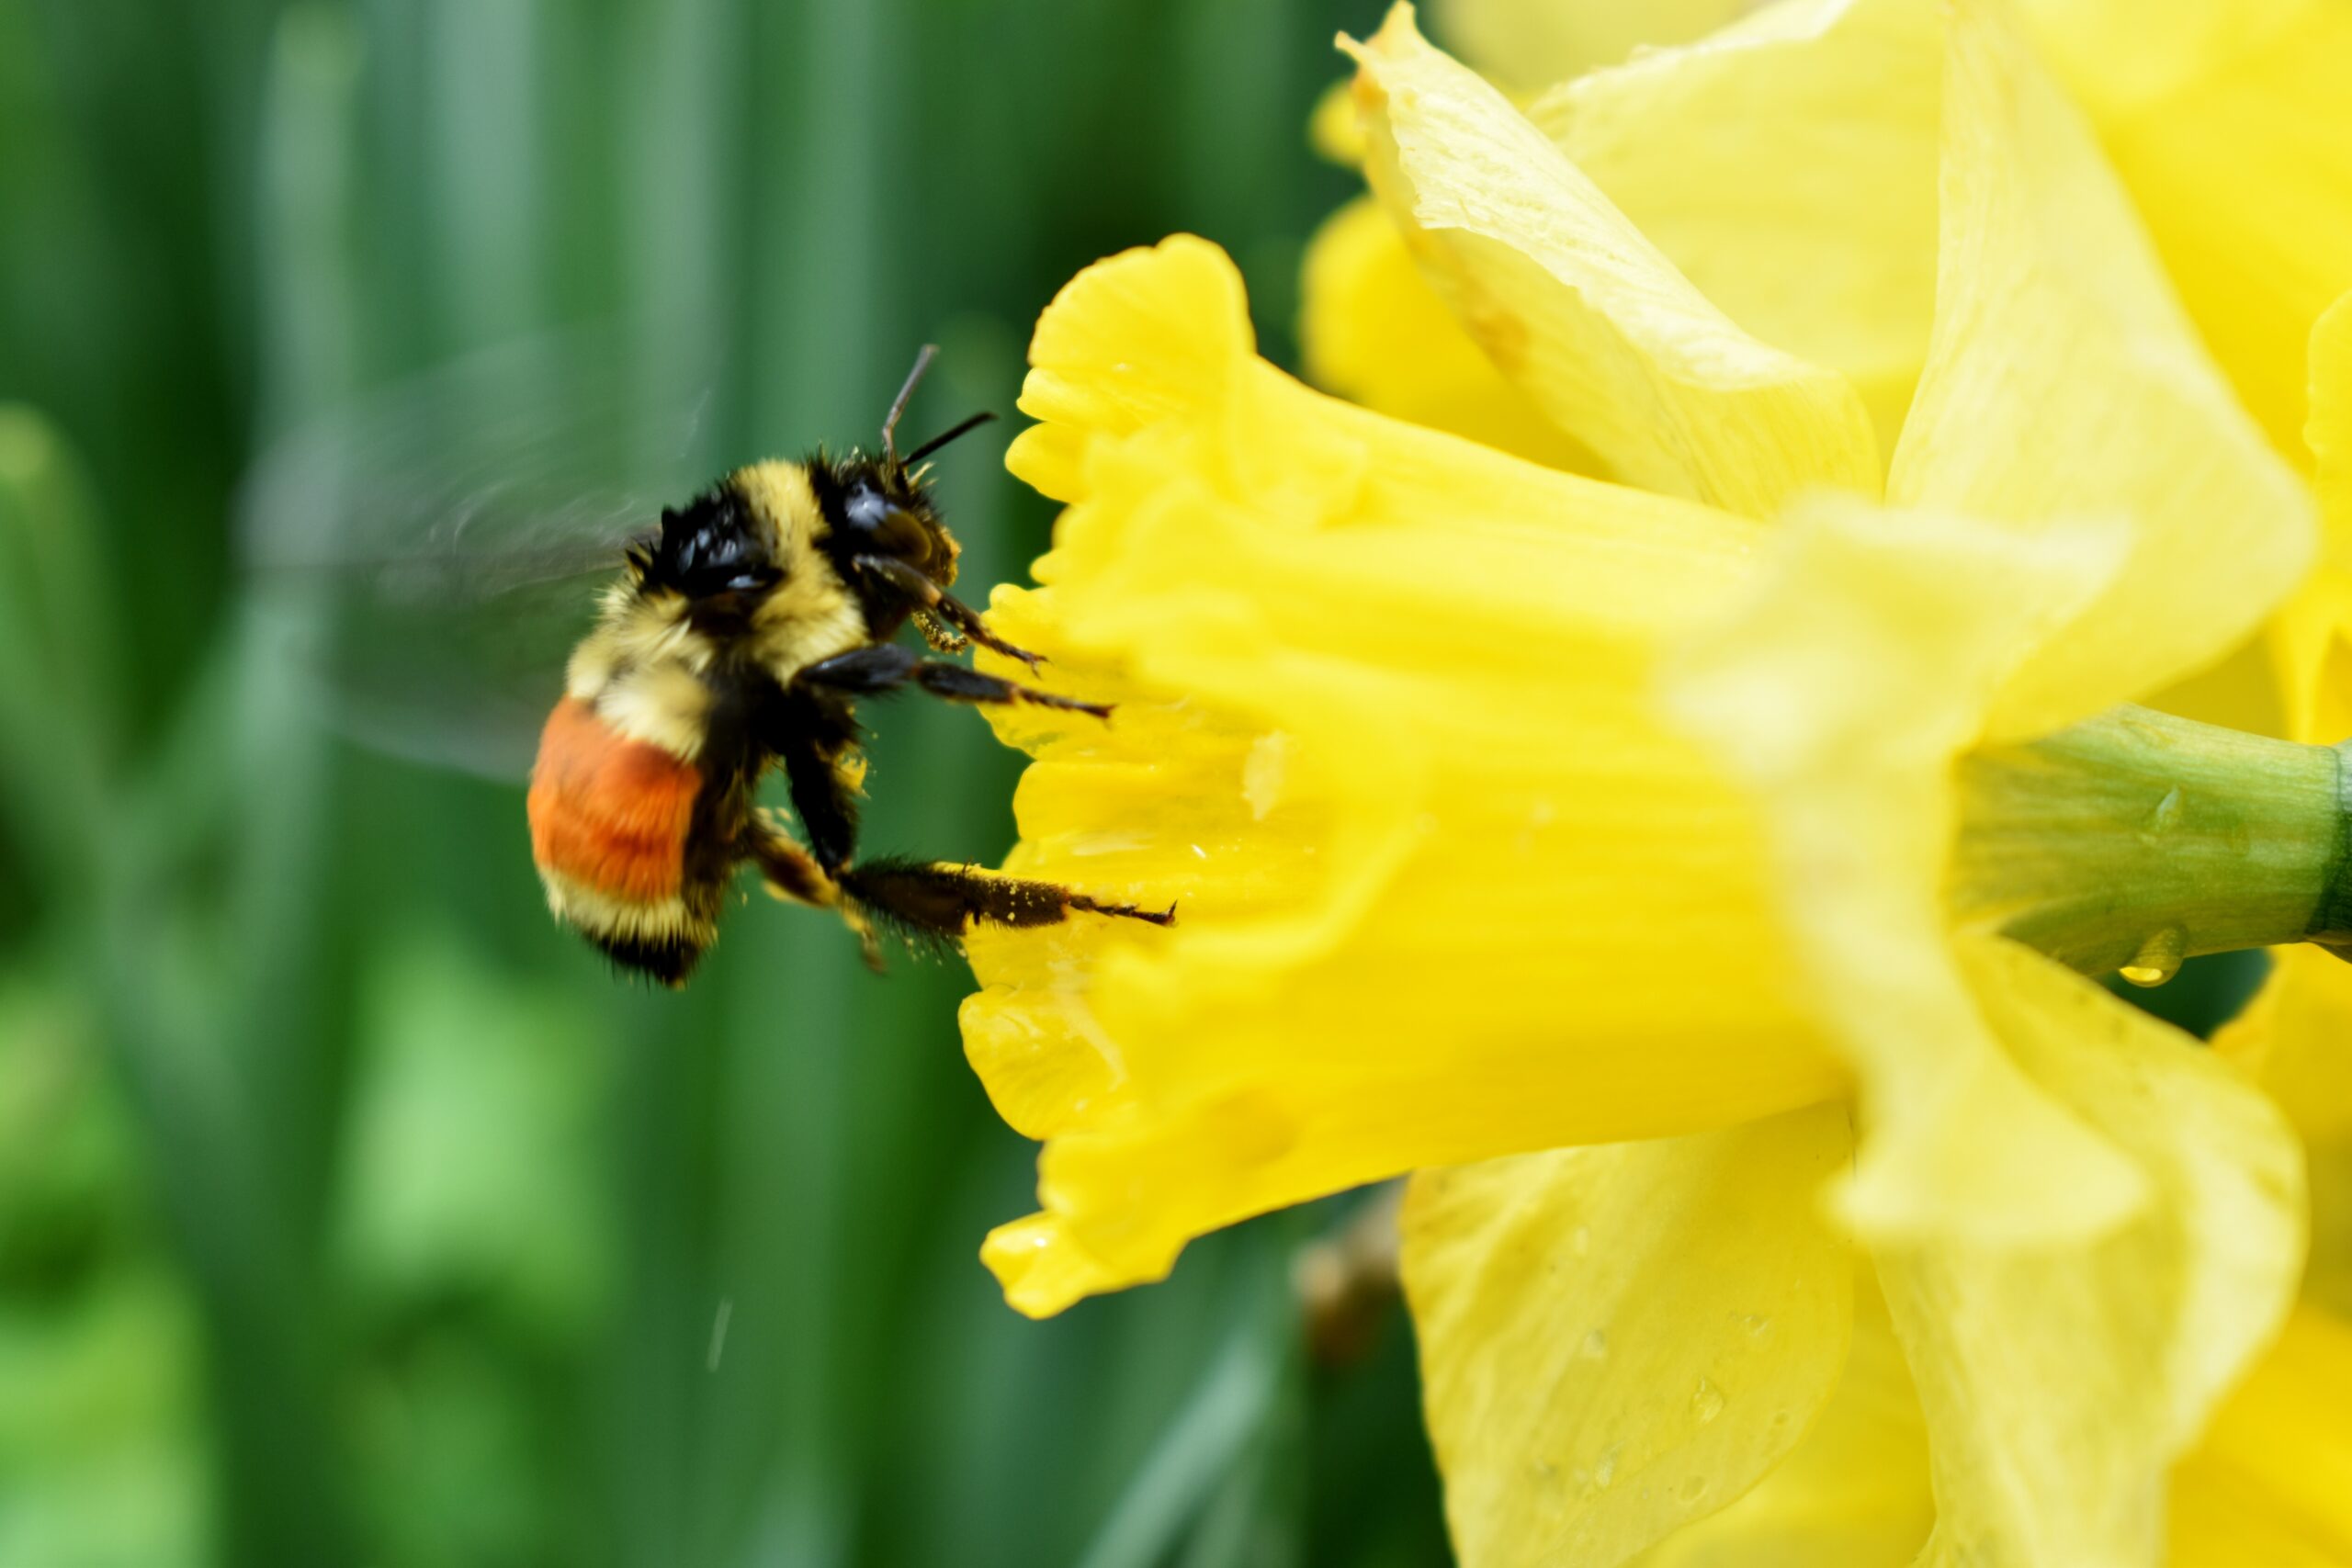 A bumblebee on a daffodil